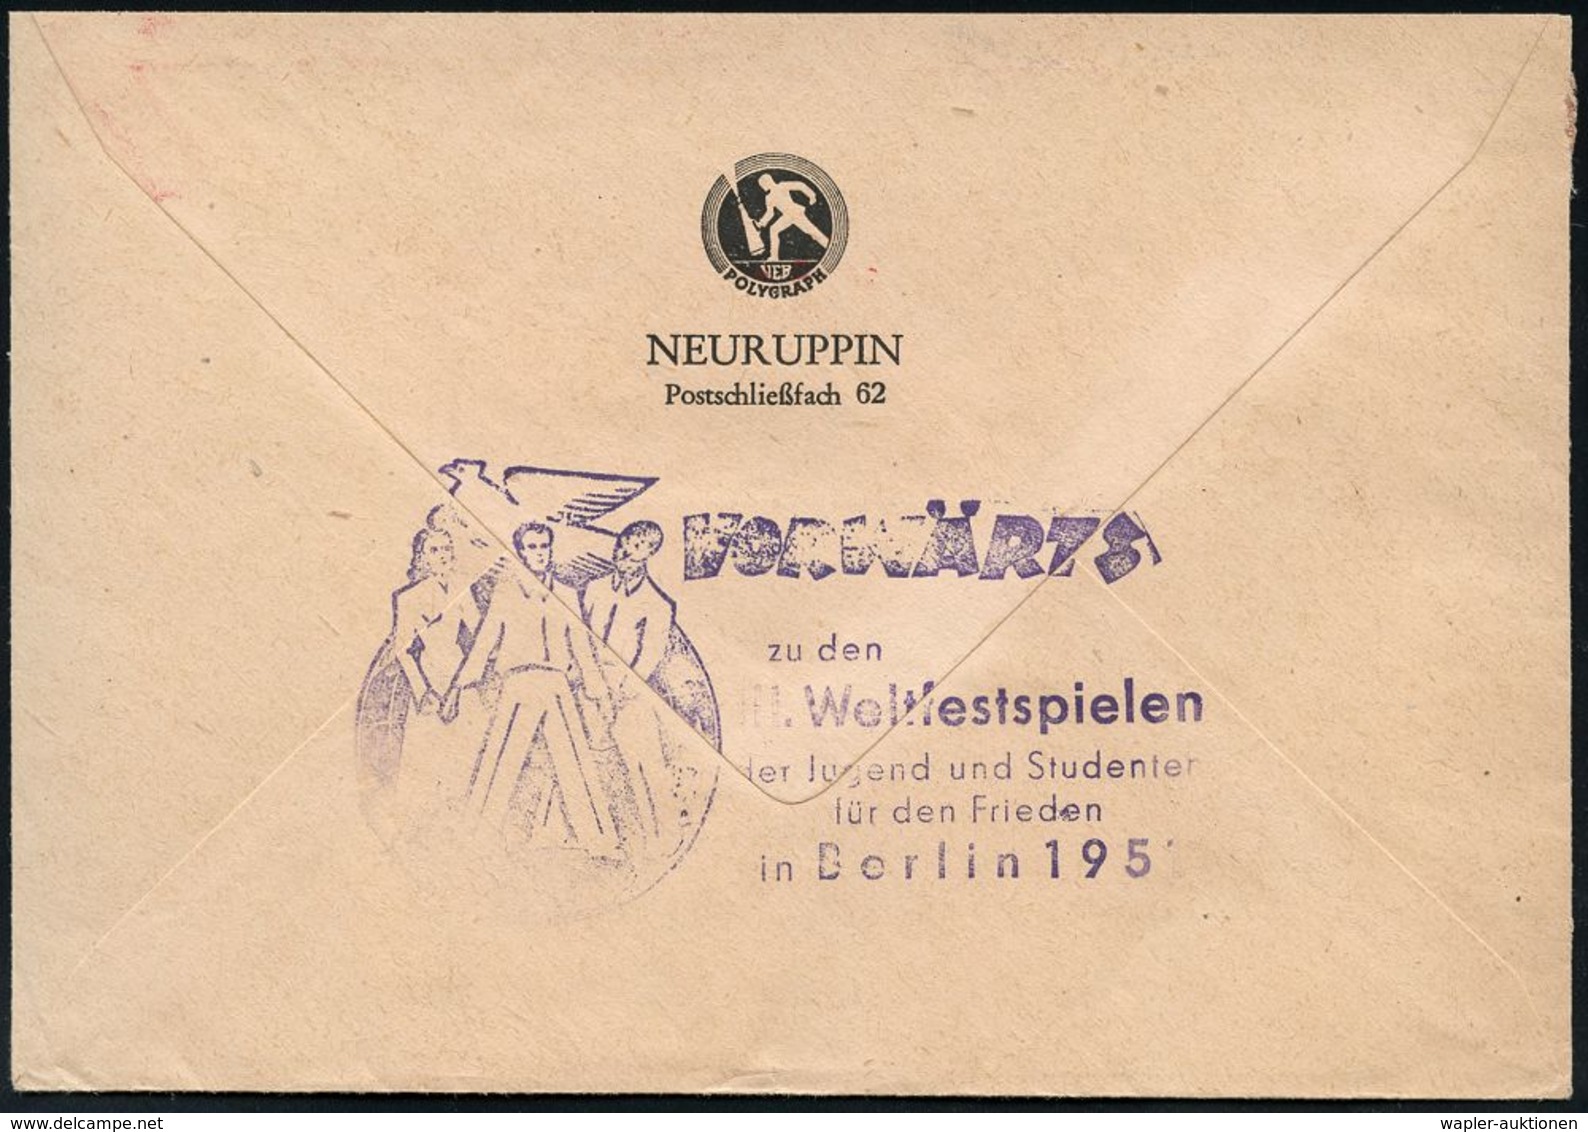 FEUERWEHR / BRANDVERHÜTUNG & -BEKÄMPFUNG : NEURUPPIN/ Wenn's Brennt/ MINIMAX Löscht! 1951 (10.7.) AFS = Hand-Feuerlösche - Pompieri